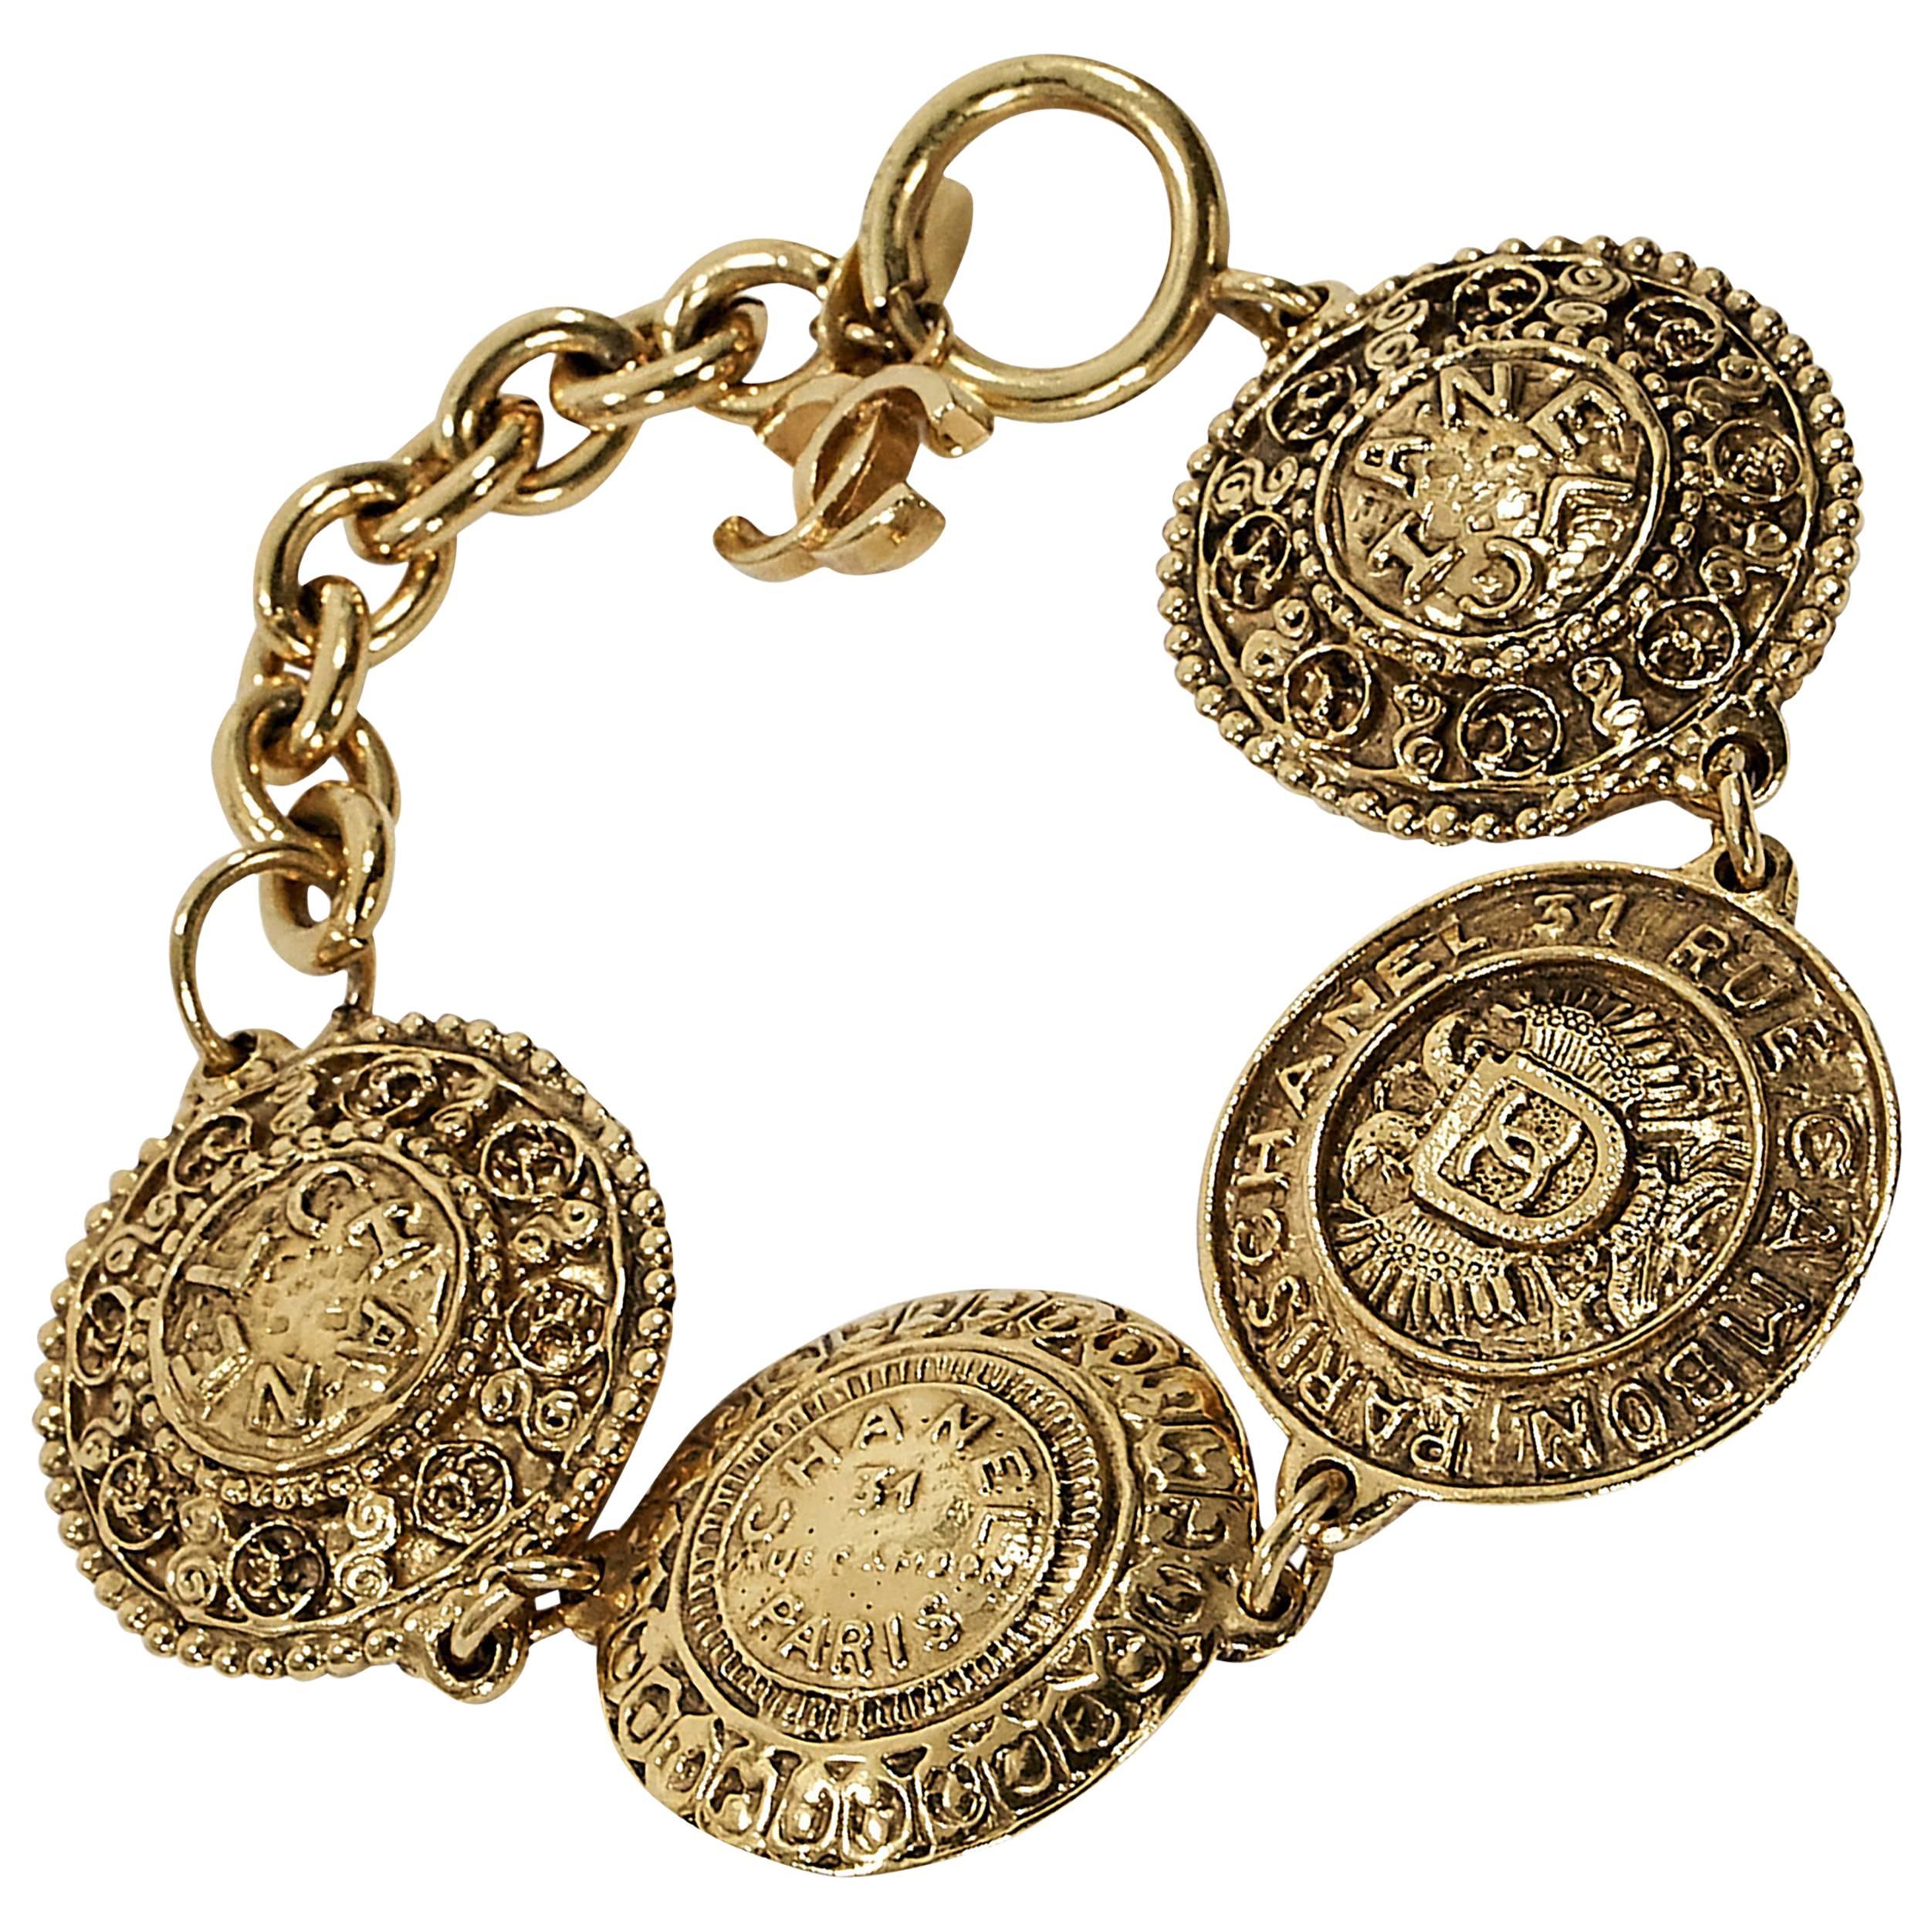 Goldtone Vintage Chanel Medallion Bracelet